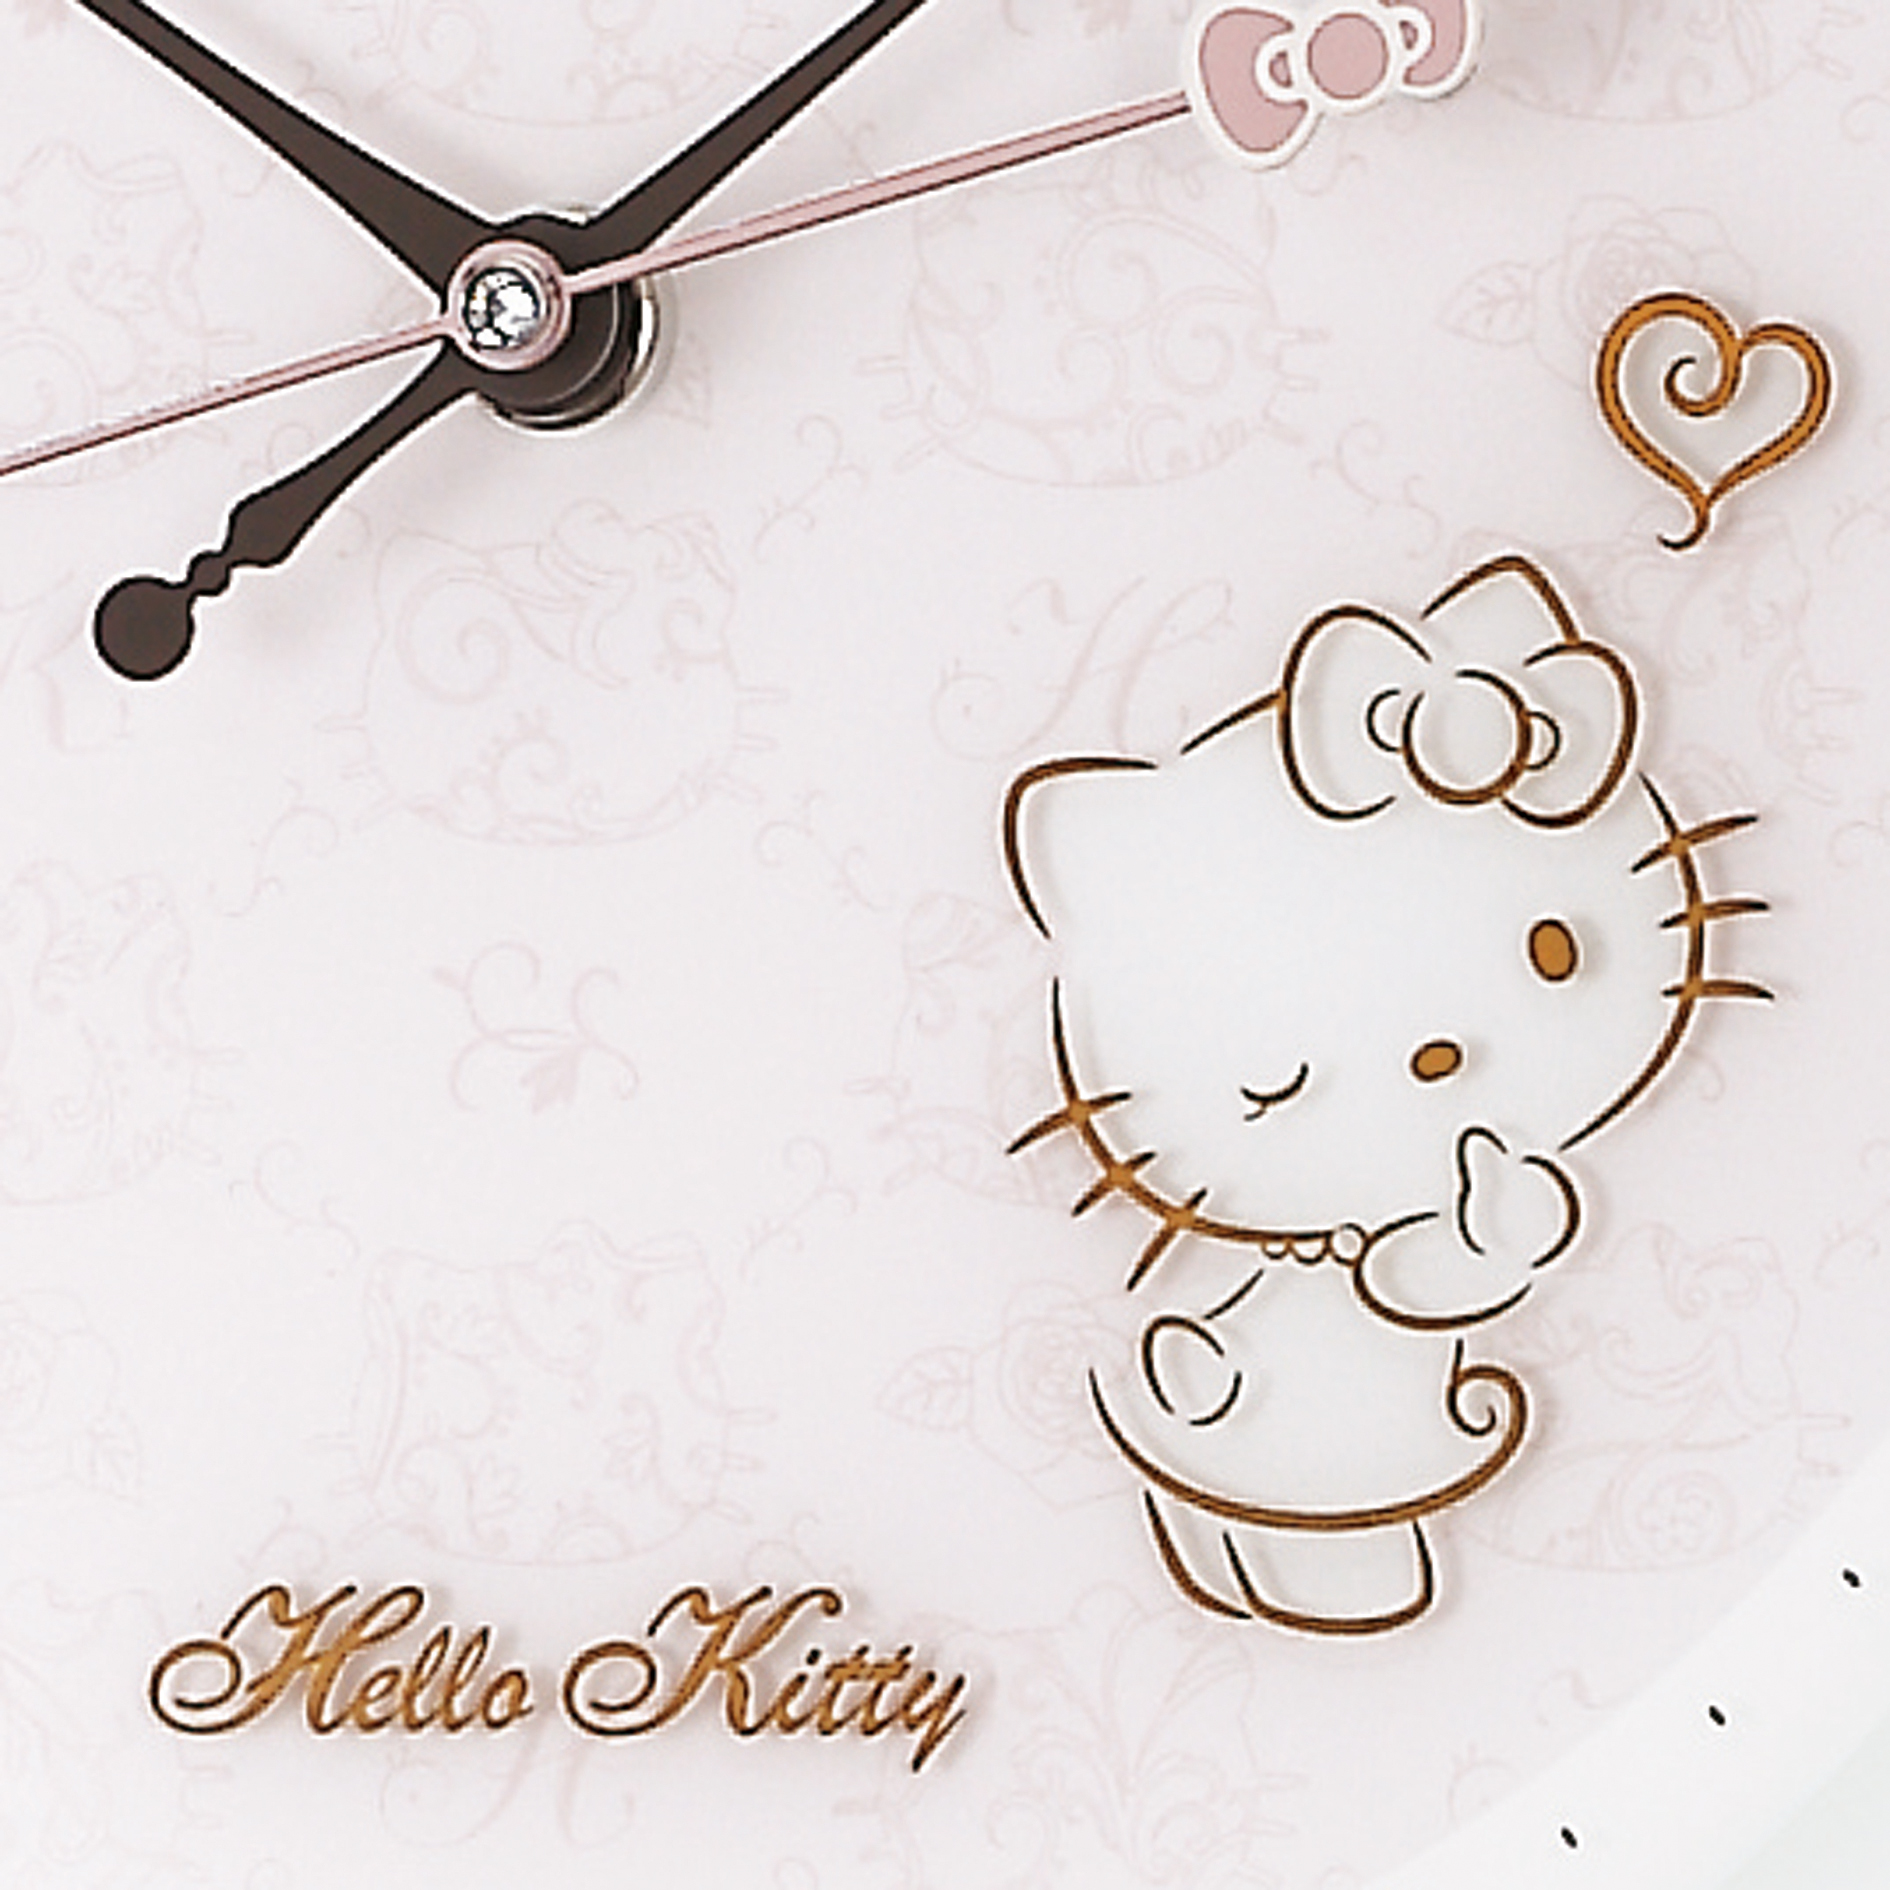 Seiko Hello Kitty大人の女性に向けたハローキティ ハイラインシリーズが登場 ニュース セイコークロック株式会社